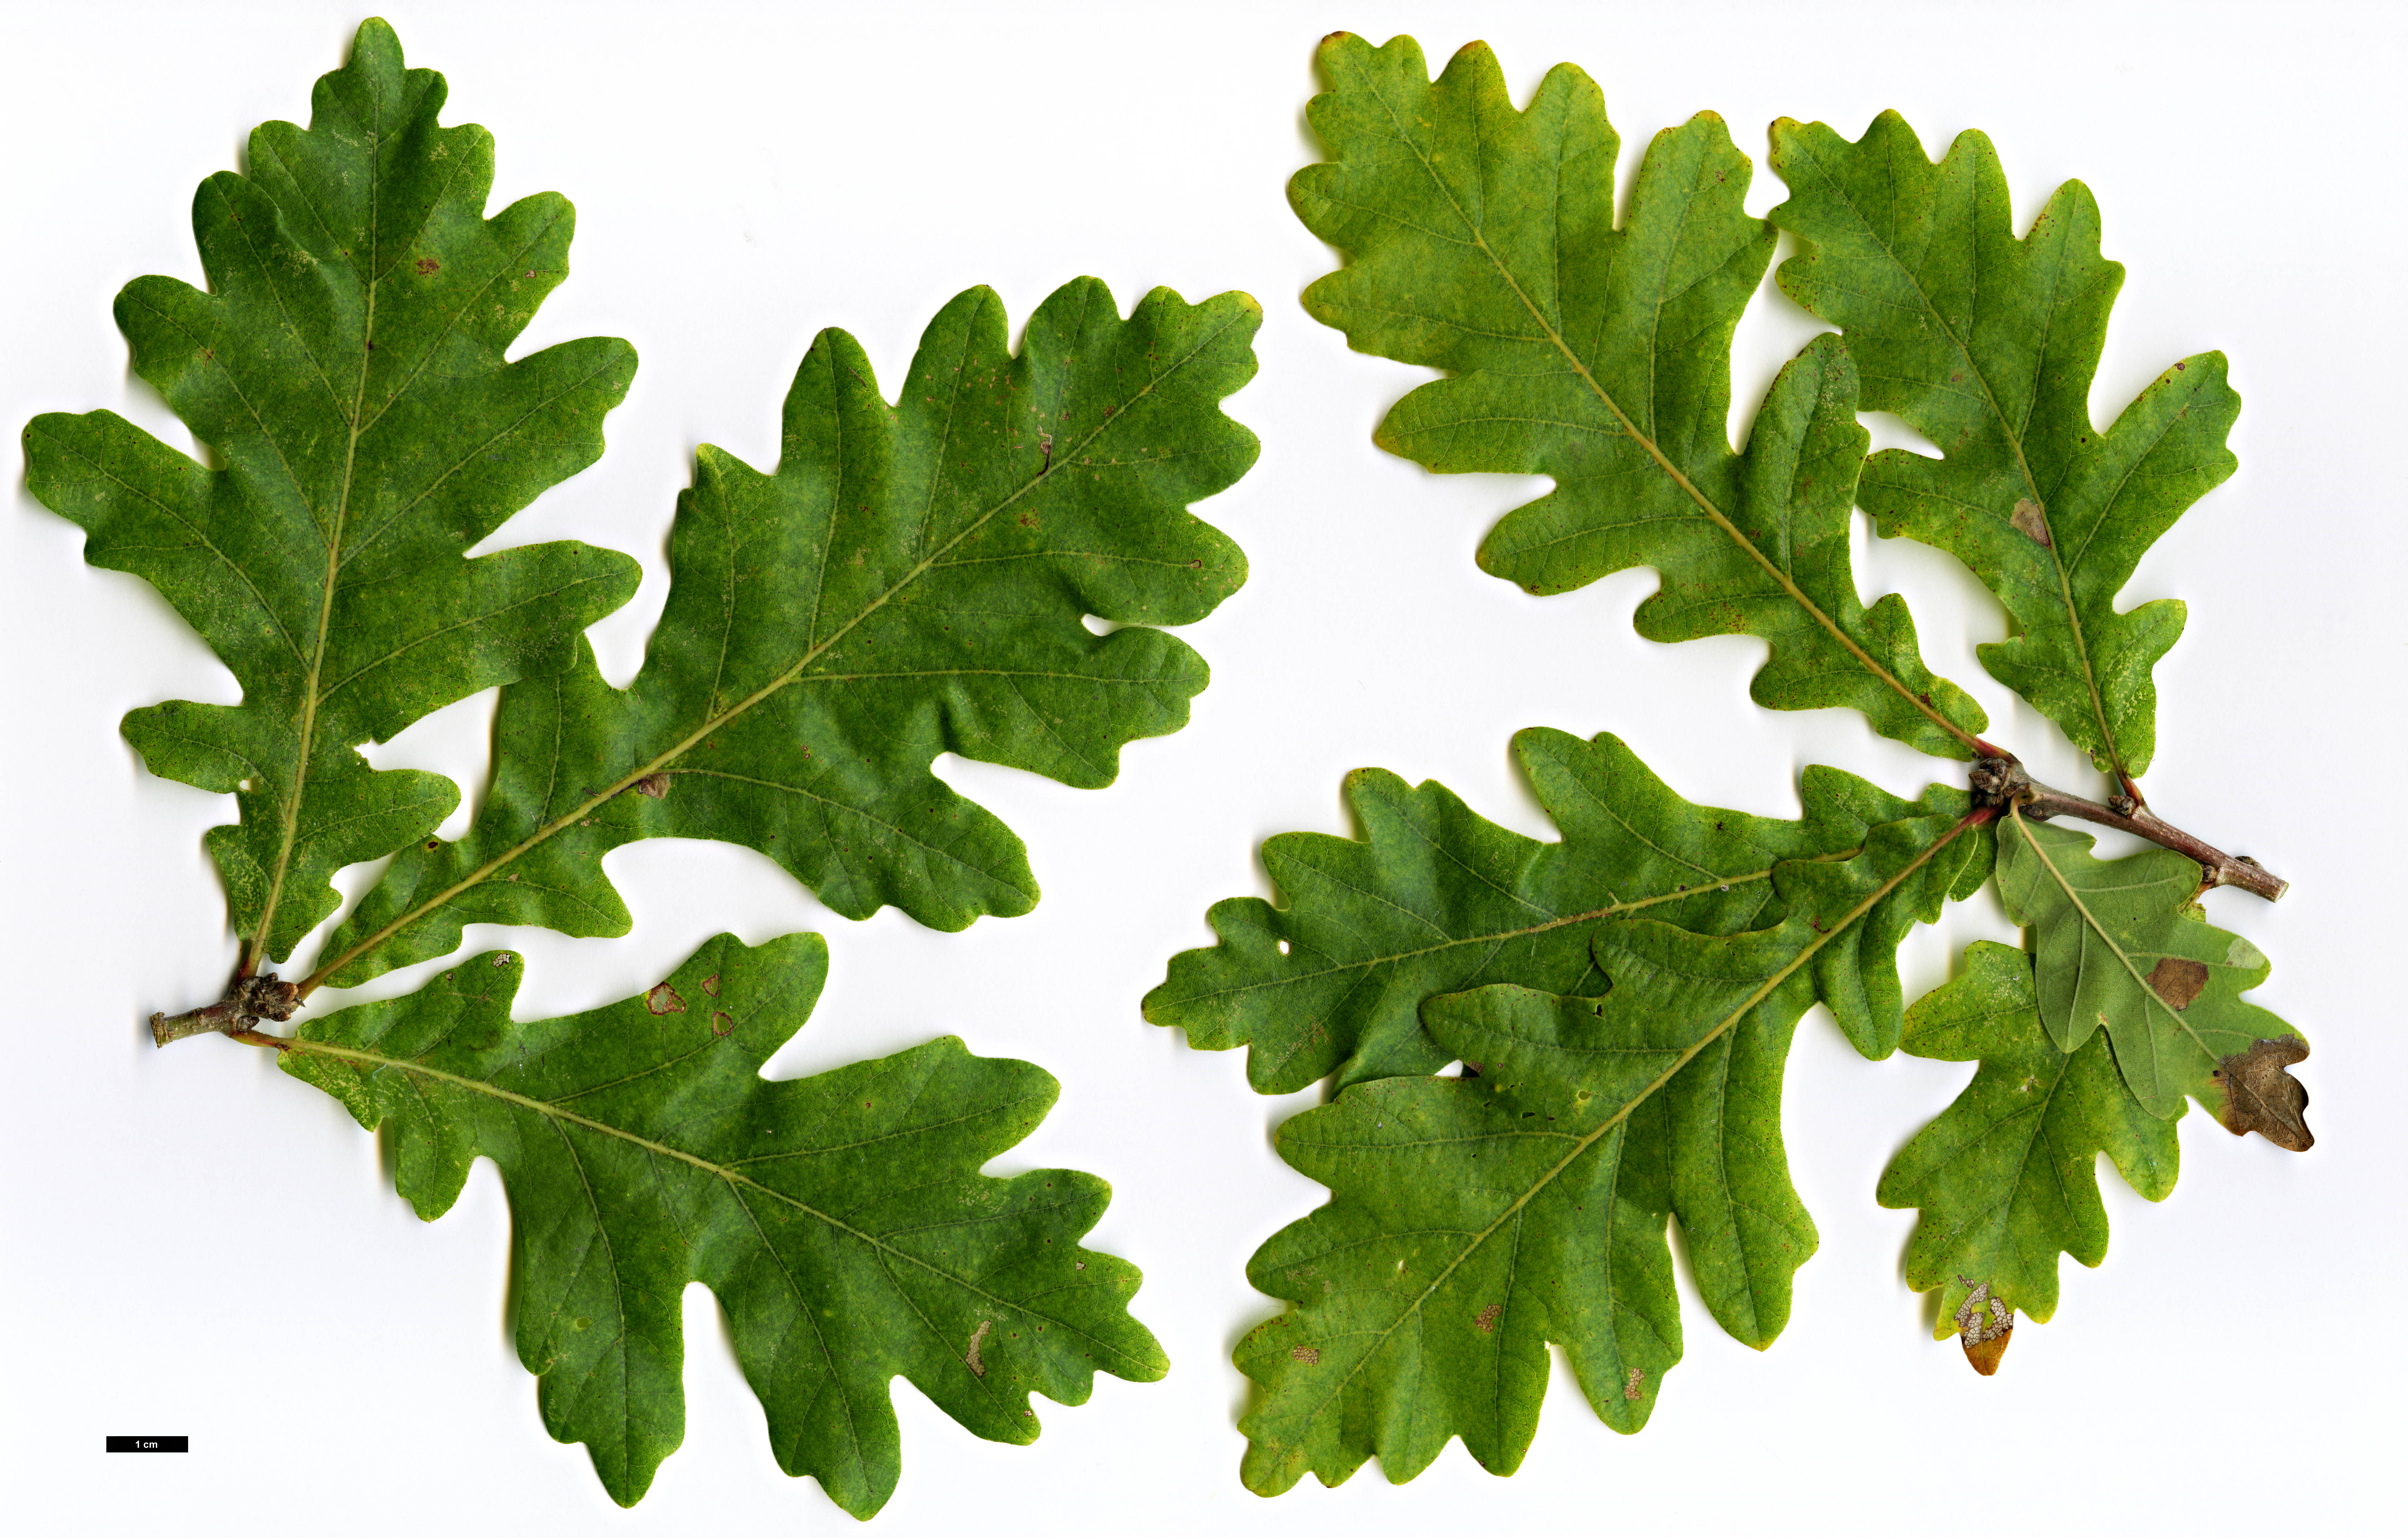 High resolution image: Family: Fagaceae - Genus: Quercus - Taxon: ×macdanielii (Q.macrocarpa × Q.robur)